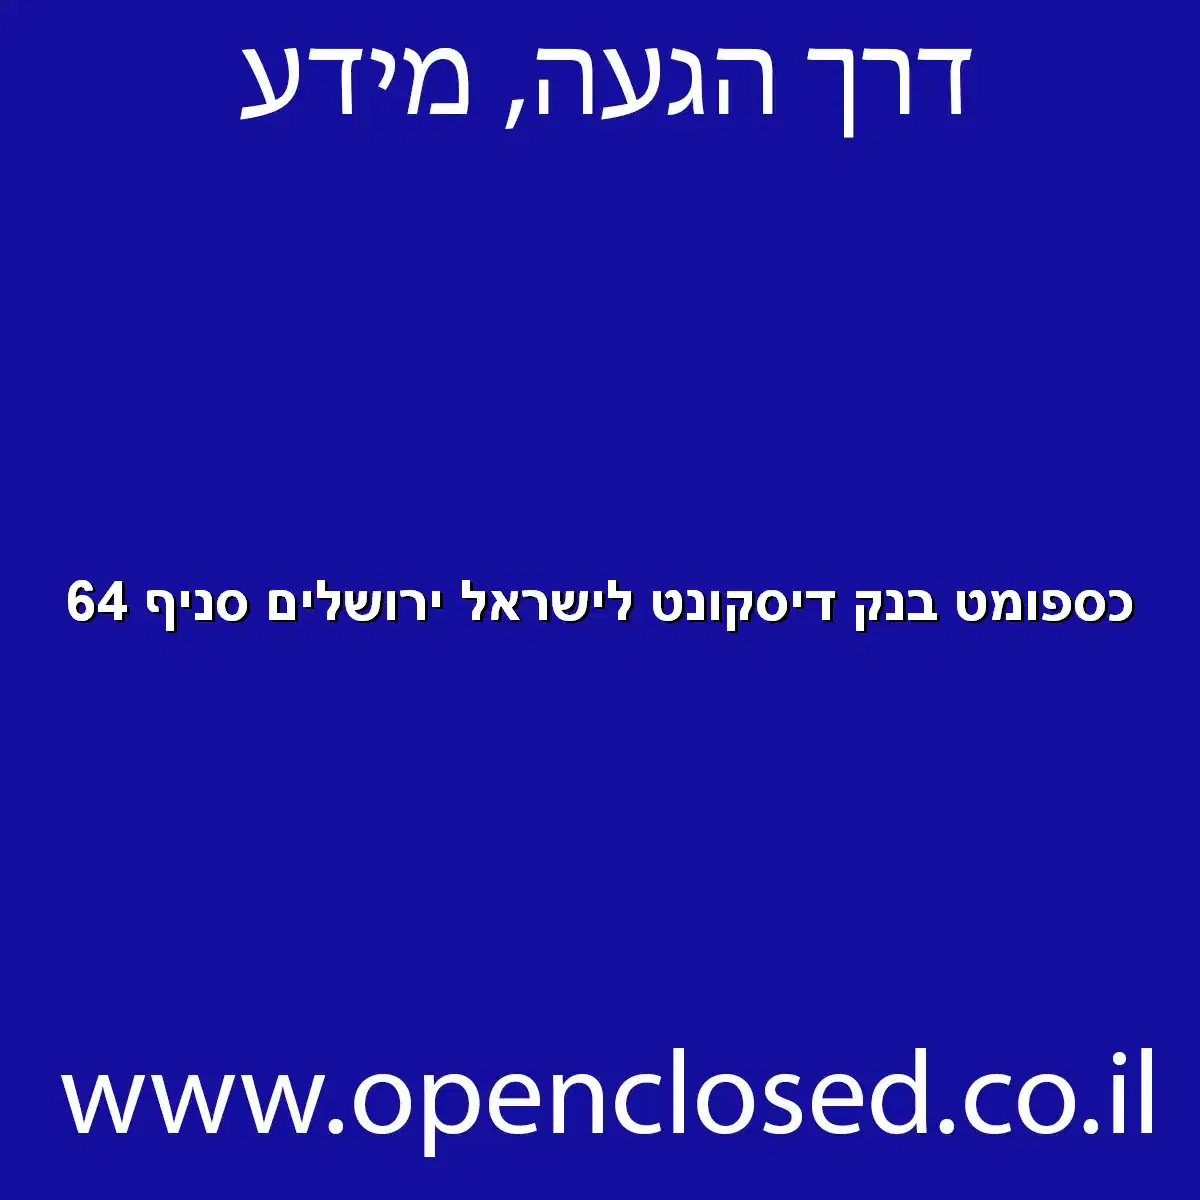 כספומט בנק דיסקונט לישראל ירושלים סניף 64